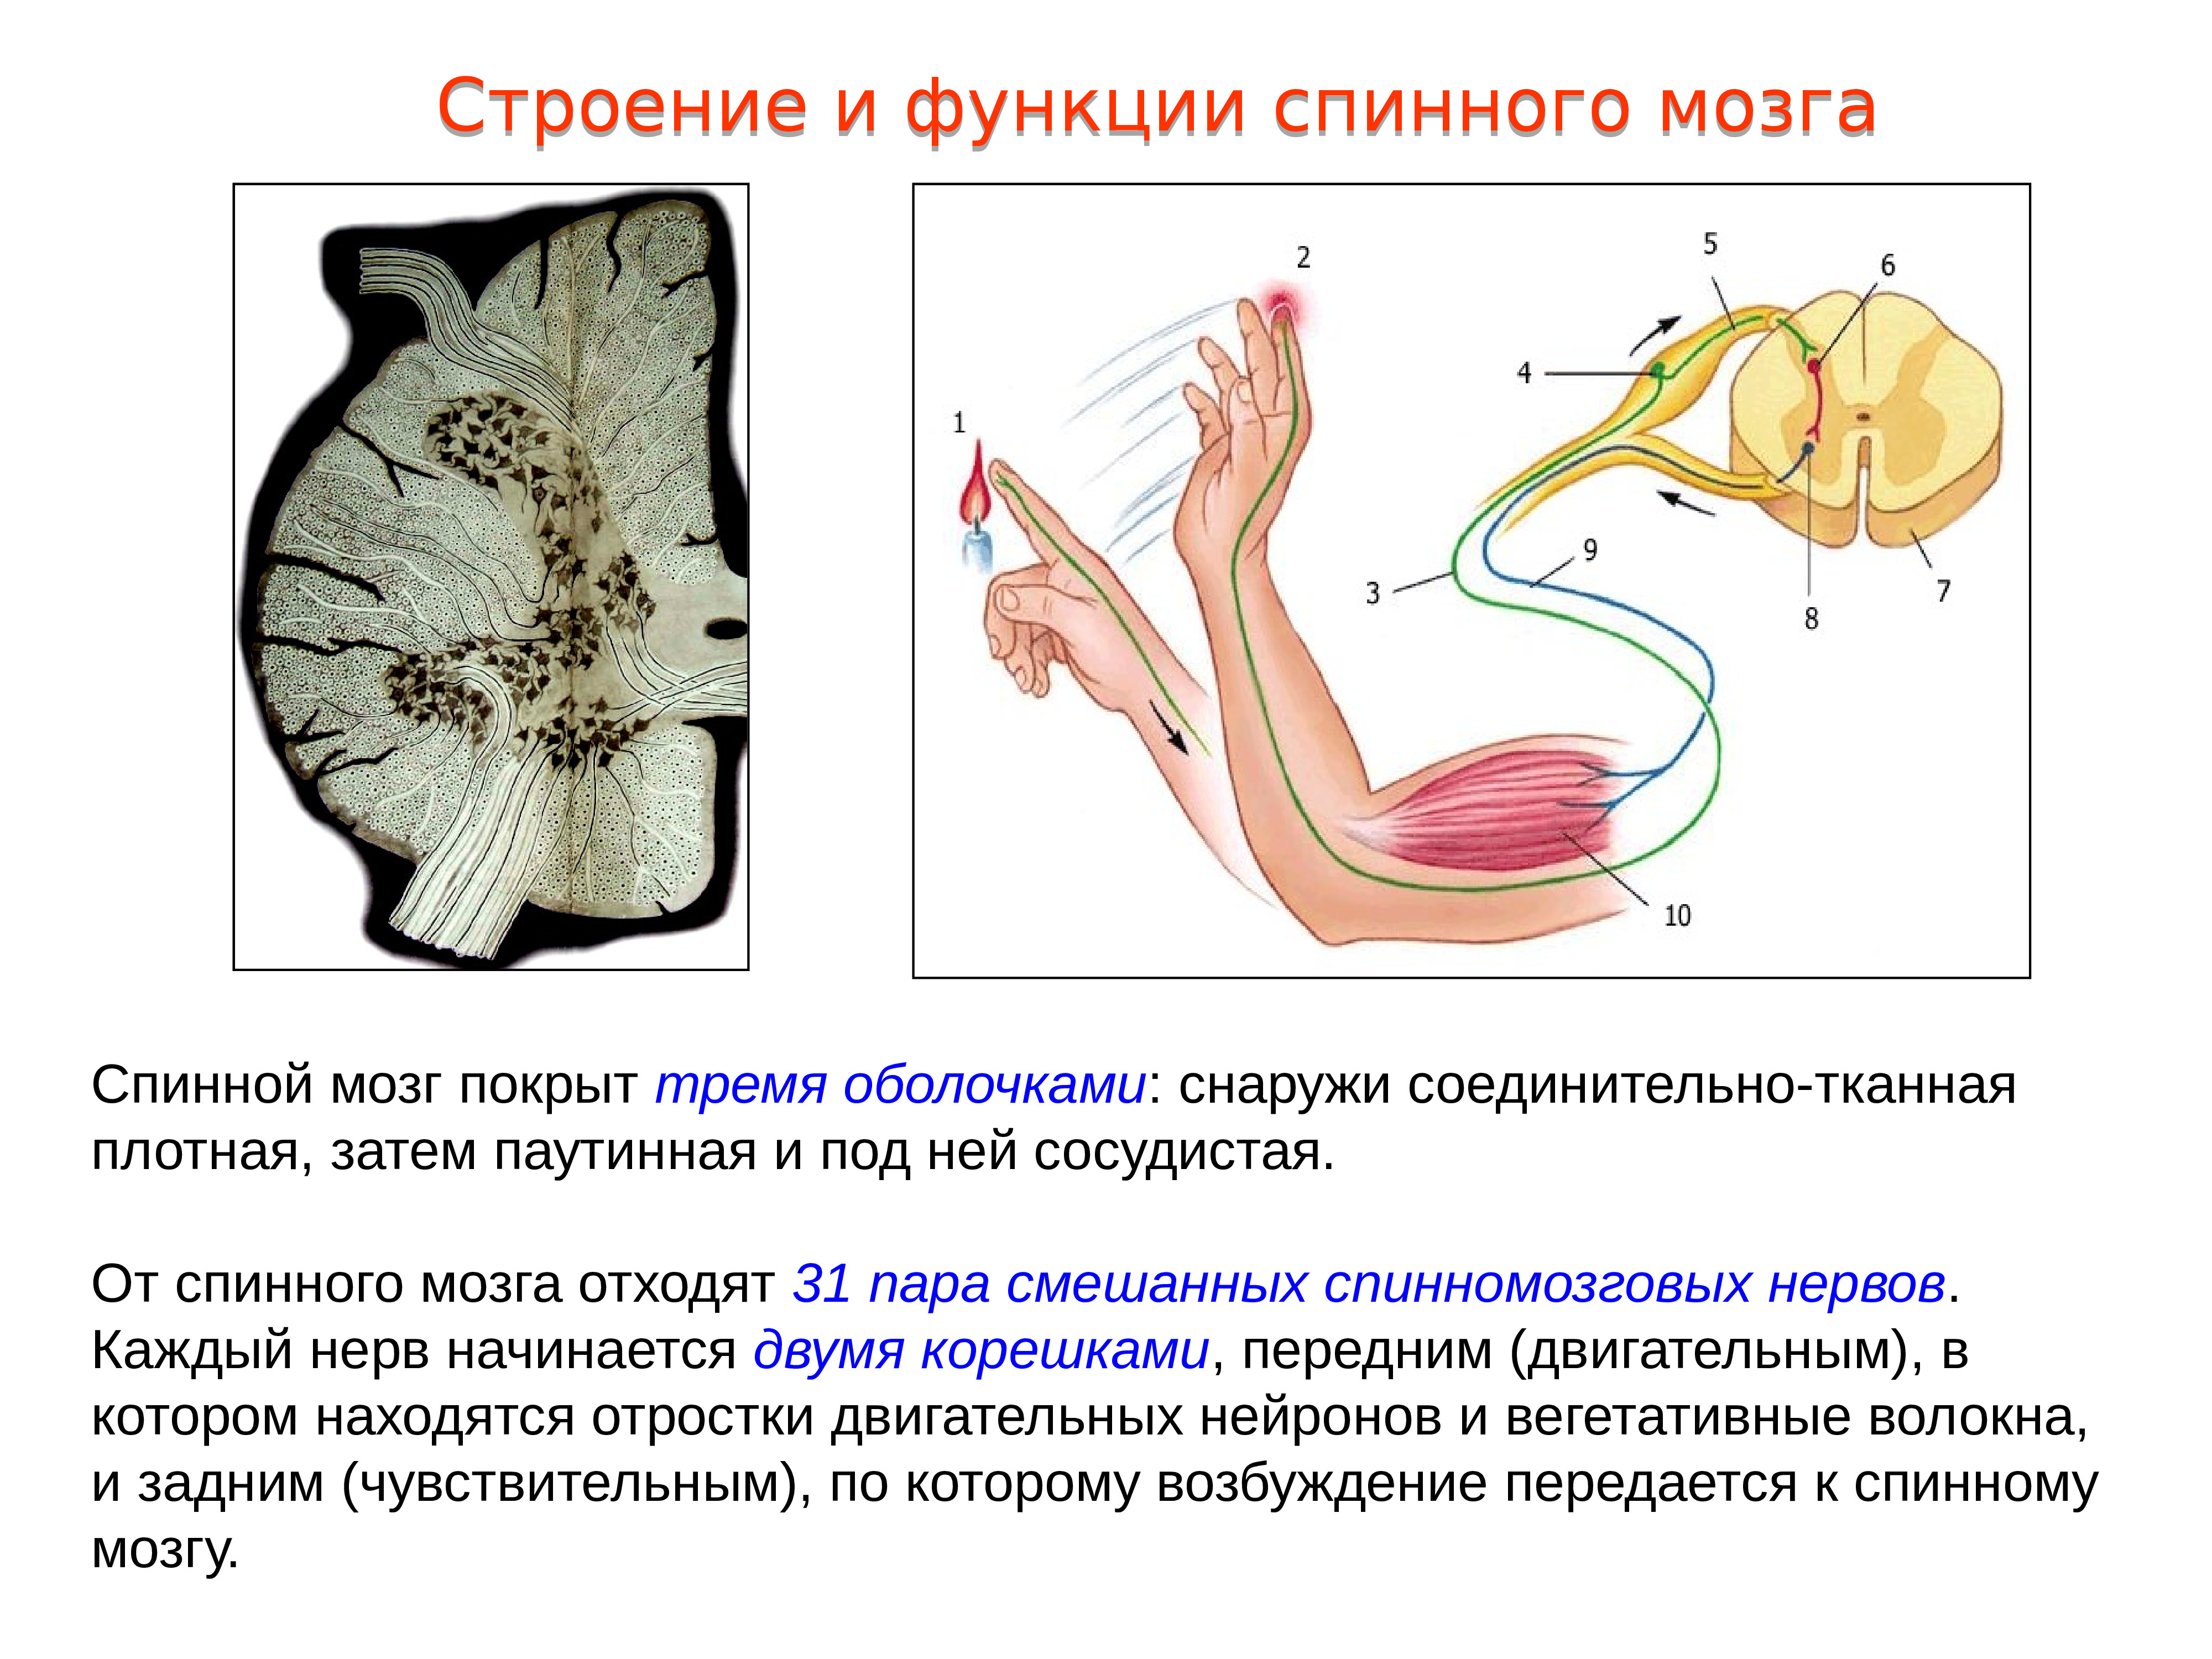 Укажите какие функции выполняет спинной мозг. 1. Строение и функции спинного мозга.. 2. Строение и функции спинного мозга. 16. Строение и функции спинного мозга. Охарактеризуйте строение и функции спинного мозга.